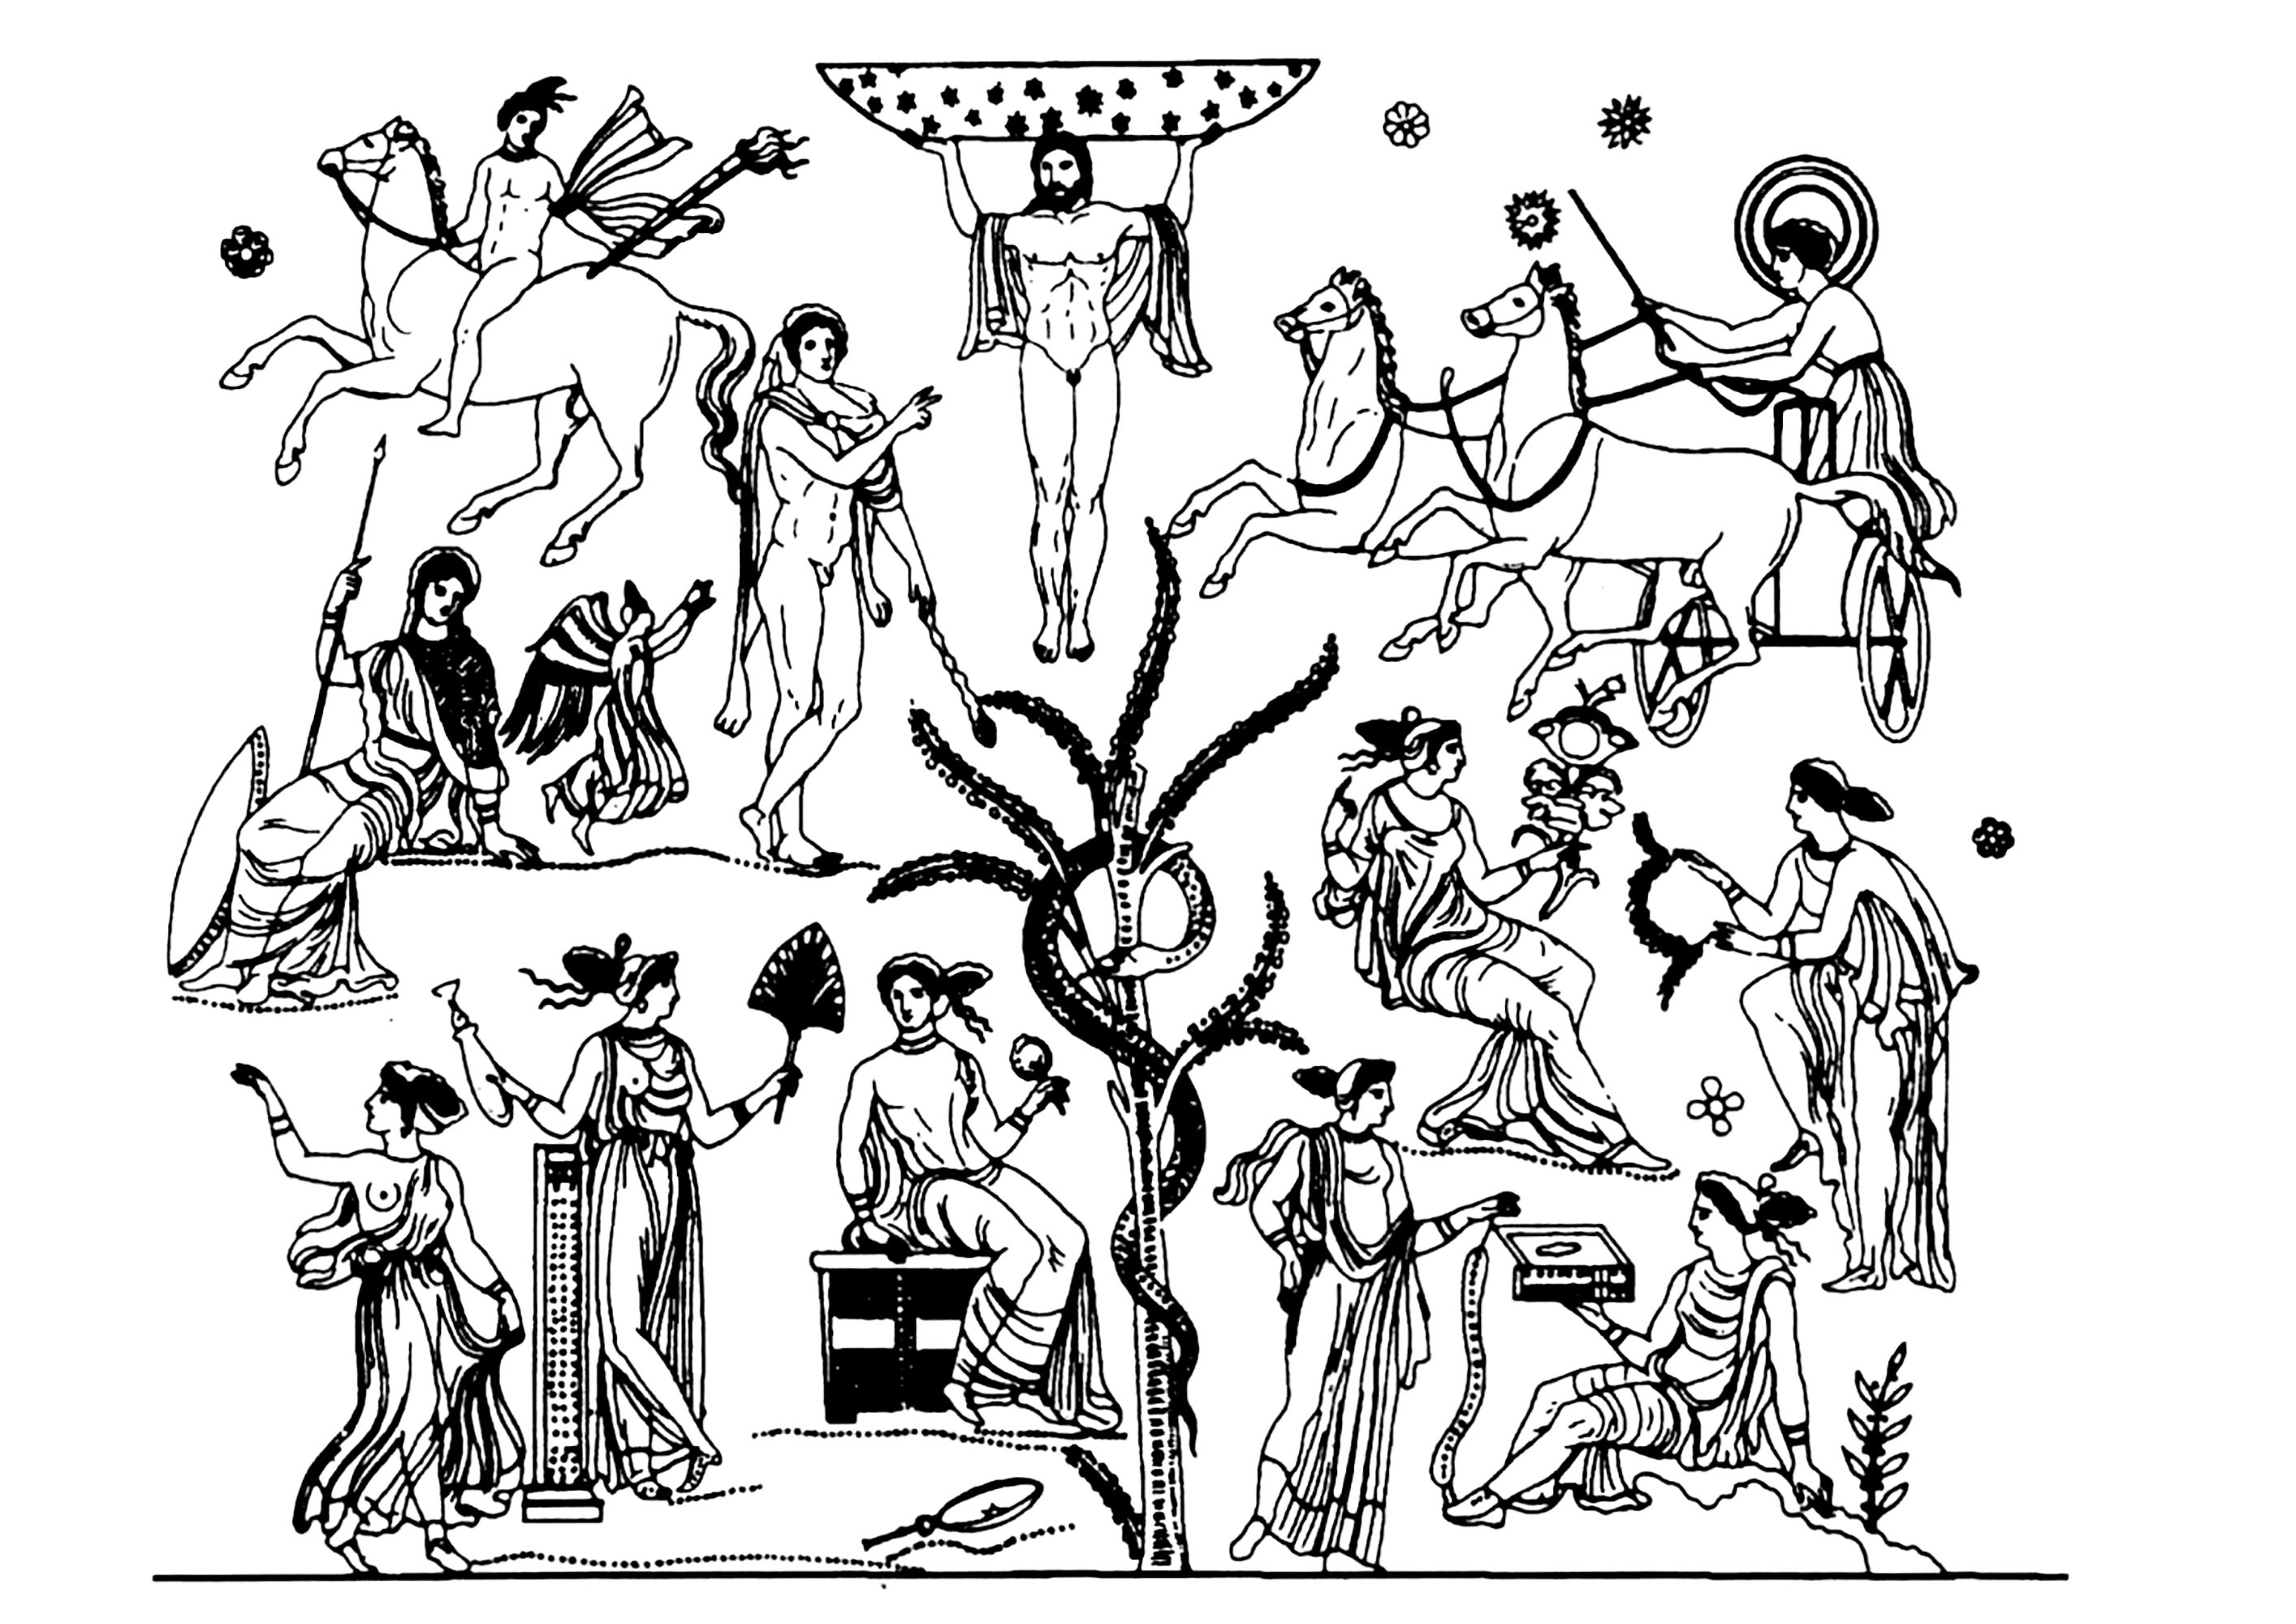 Heróis e heroínas da mitologia grega. Representação axial de Atlas e da árvore do Jardim das Hespérides, vaso datado entre 340 e 320 a.C.Apresenta Atlas, Hélois, Phosphoros, Nikè, Athéna, Phérécyde, Héraclès...